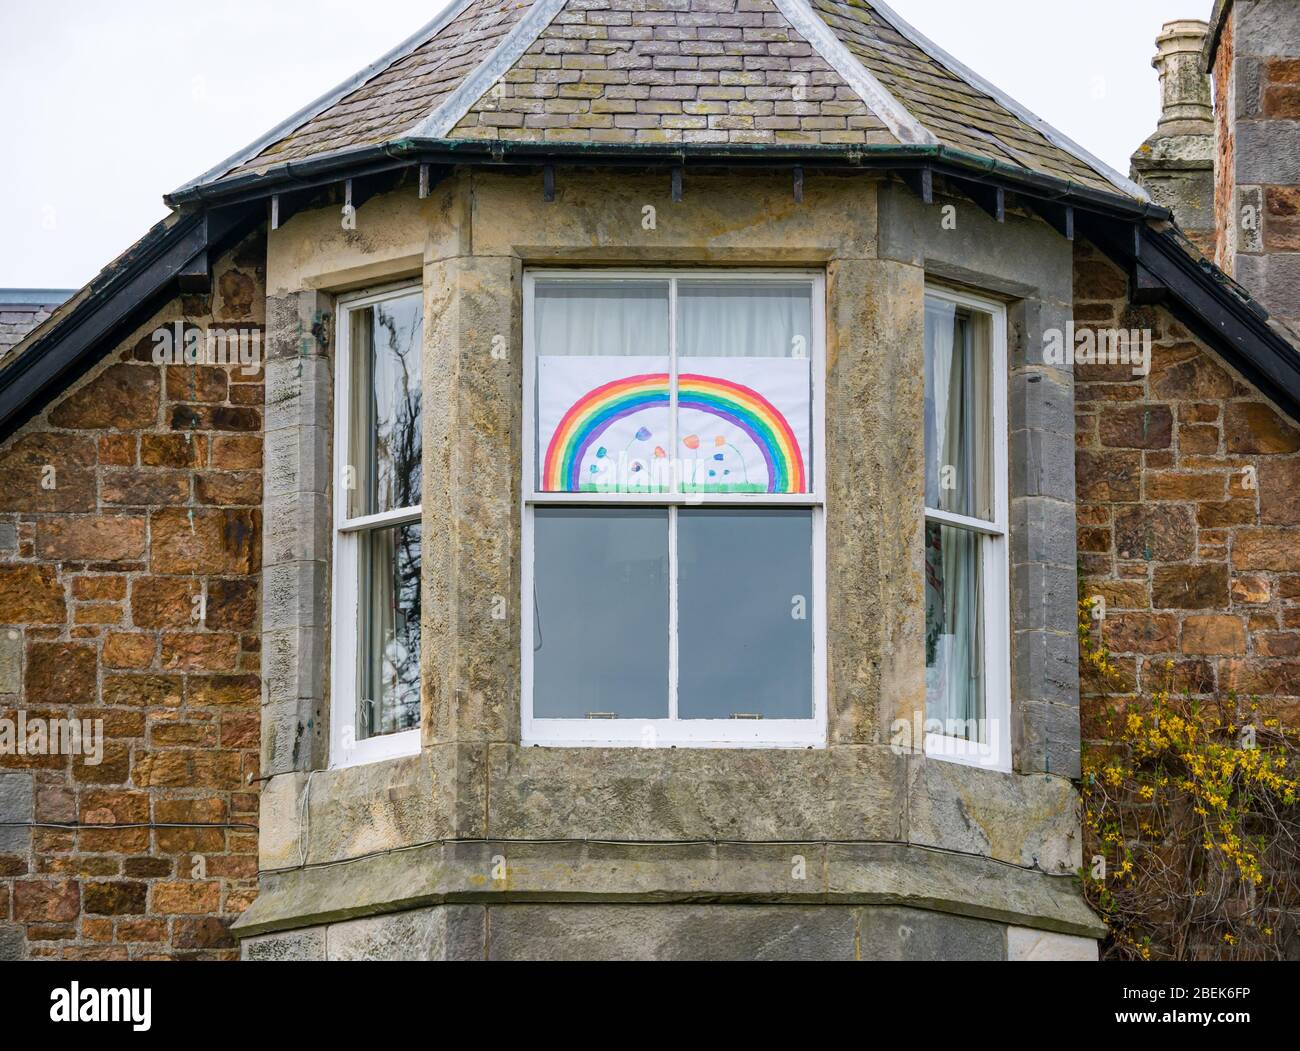 Coronavirus Covid-19 Hope Regenbogenzeichnung in viktorianischen Hausfenster während der Pandemie Sperrung, East Lothian, Schottland, Großbritannien Stockfoto